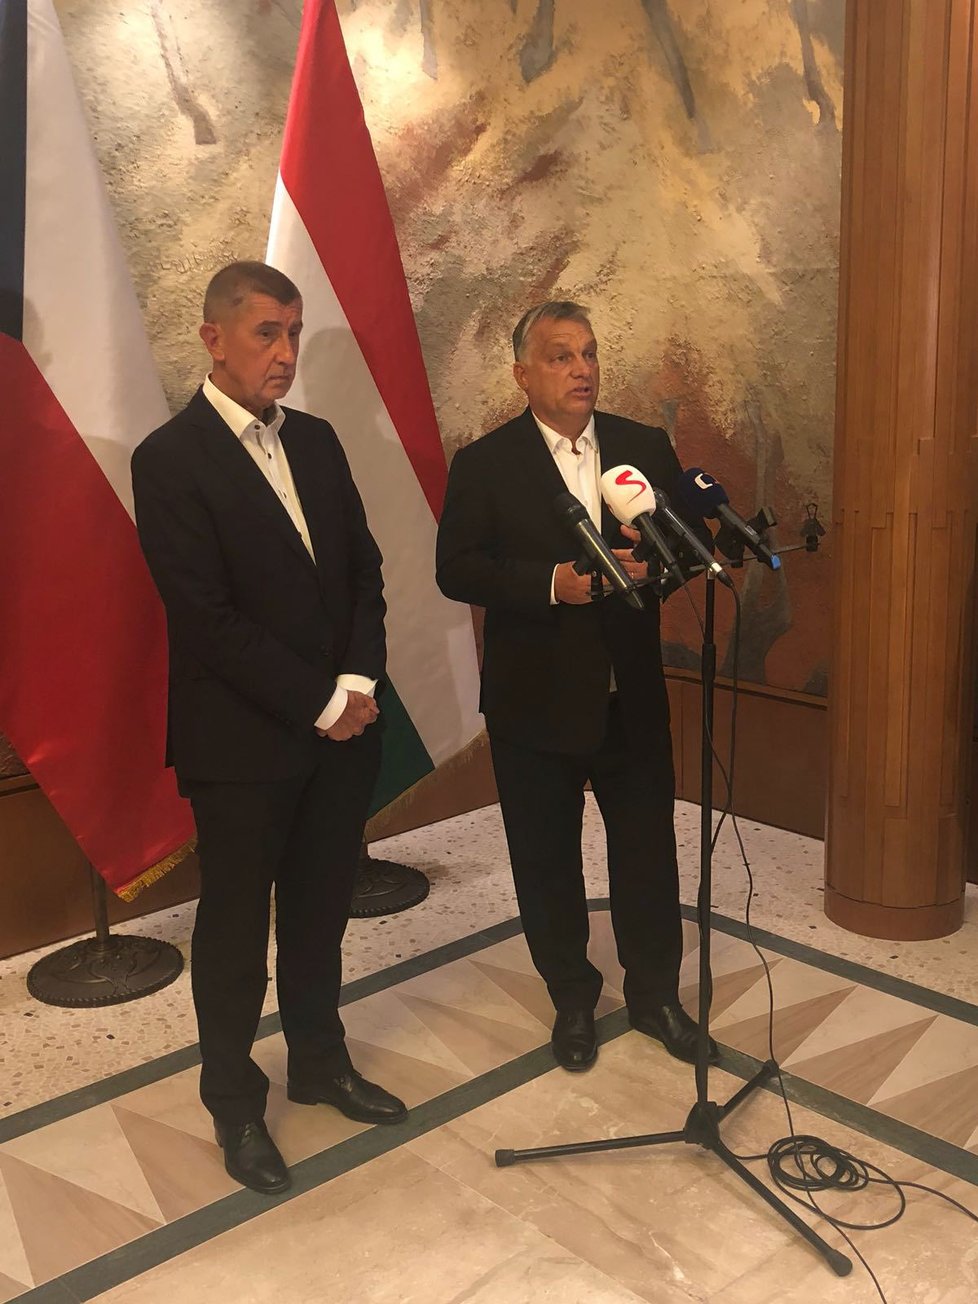 Babiš i Orbán se chtějí před zářijovým neformálním summitem EU potkat i s ostatními zástupci V4.